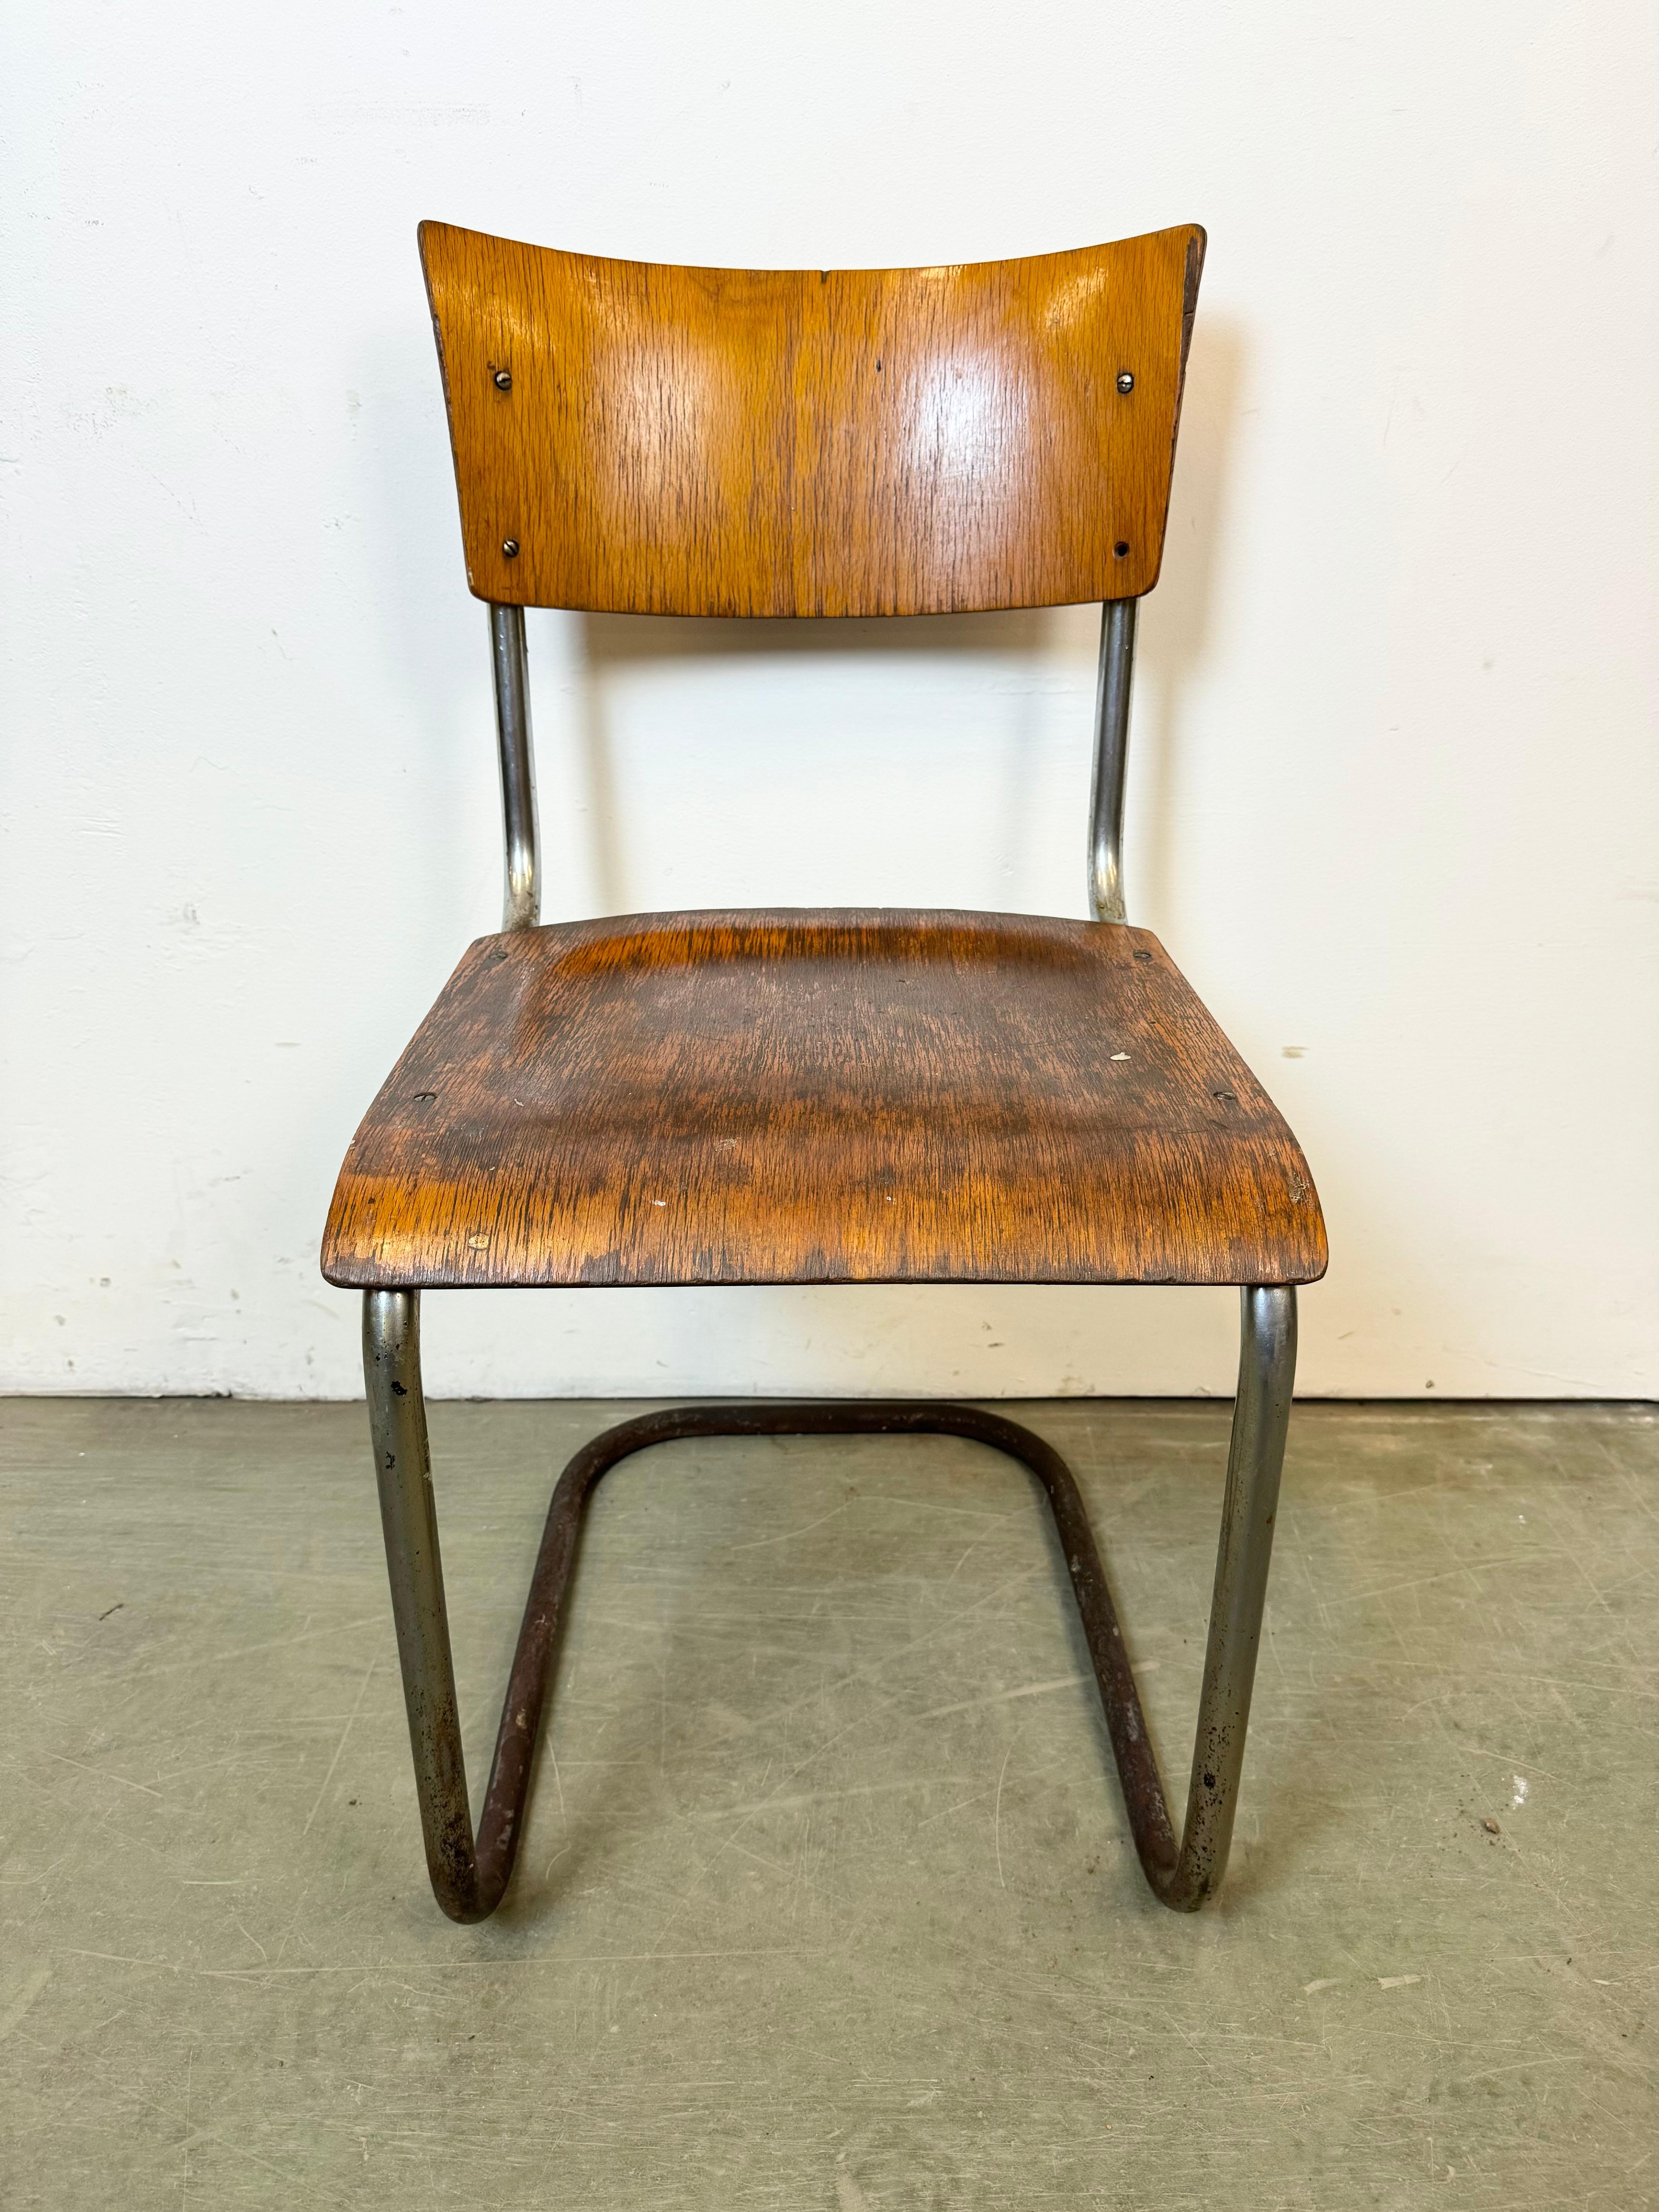 Chaise industrielle vintage fabriquée dans l'ancienne Tchécoslovaquie au cours des années 1960. La construction est en fer chromé et l'assise et le dossier sont en contreplaqué. Le poids de la chaise est de 5 kg.
